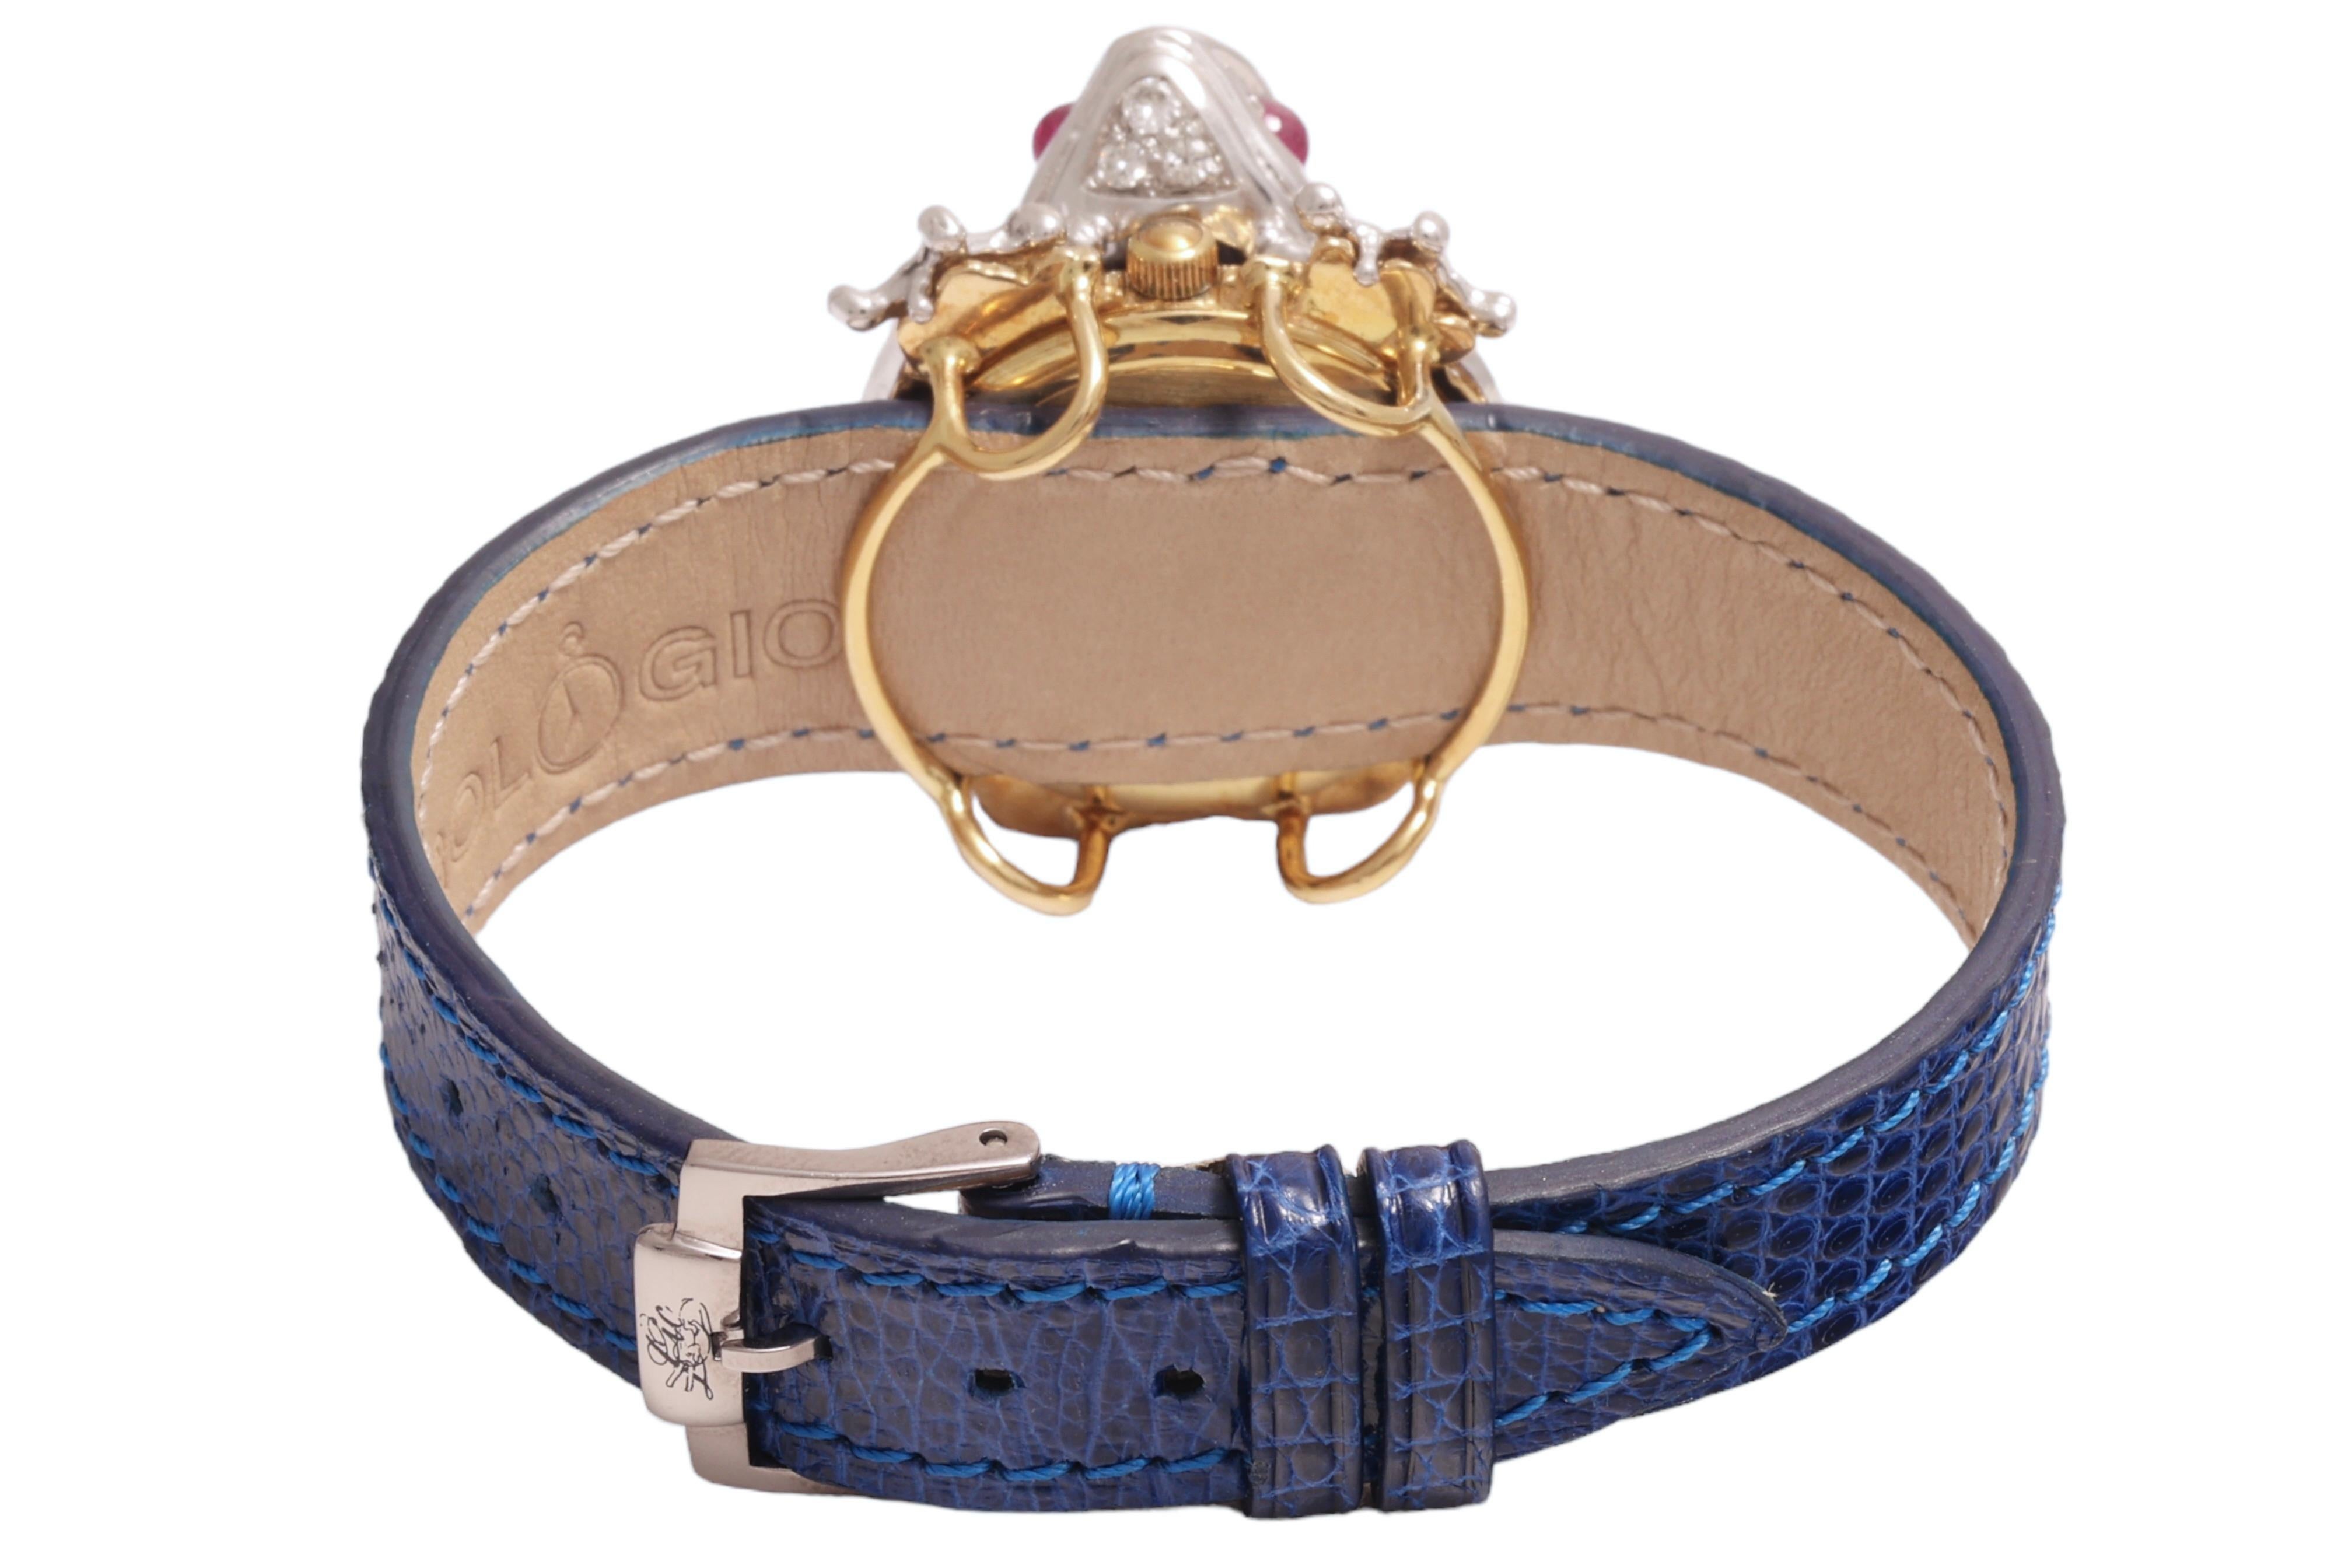 Zannetti Rana Scrigno Jewel Frog Wrist Watch / Bracelet, Diamonds & Ruby's For Sale 1